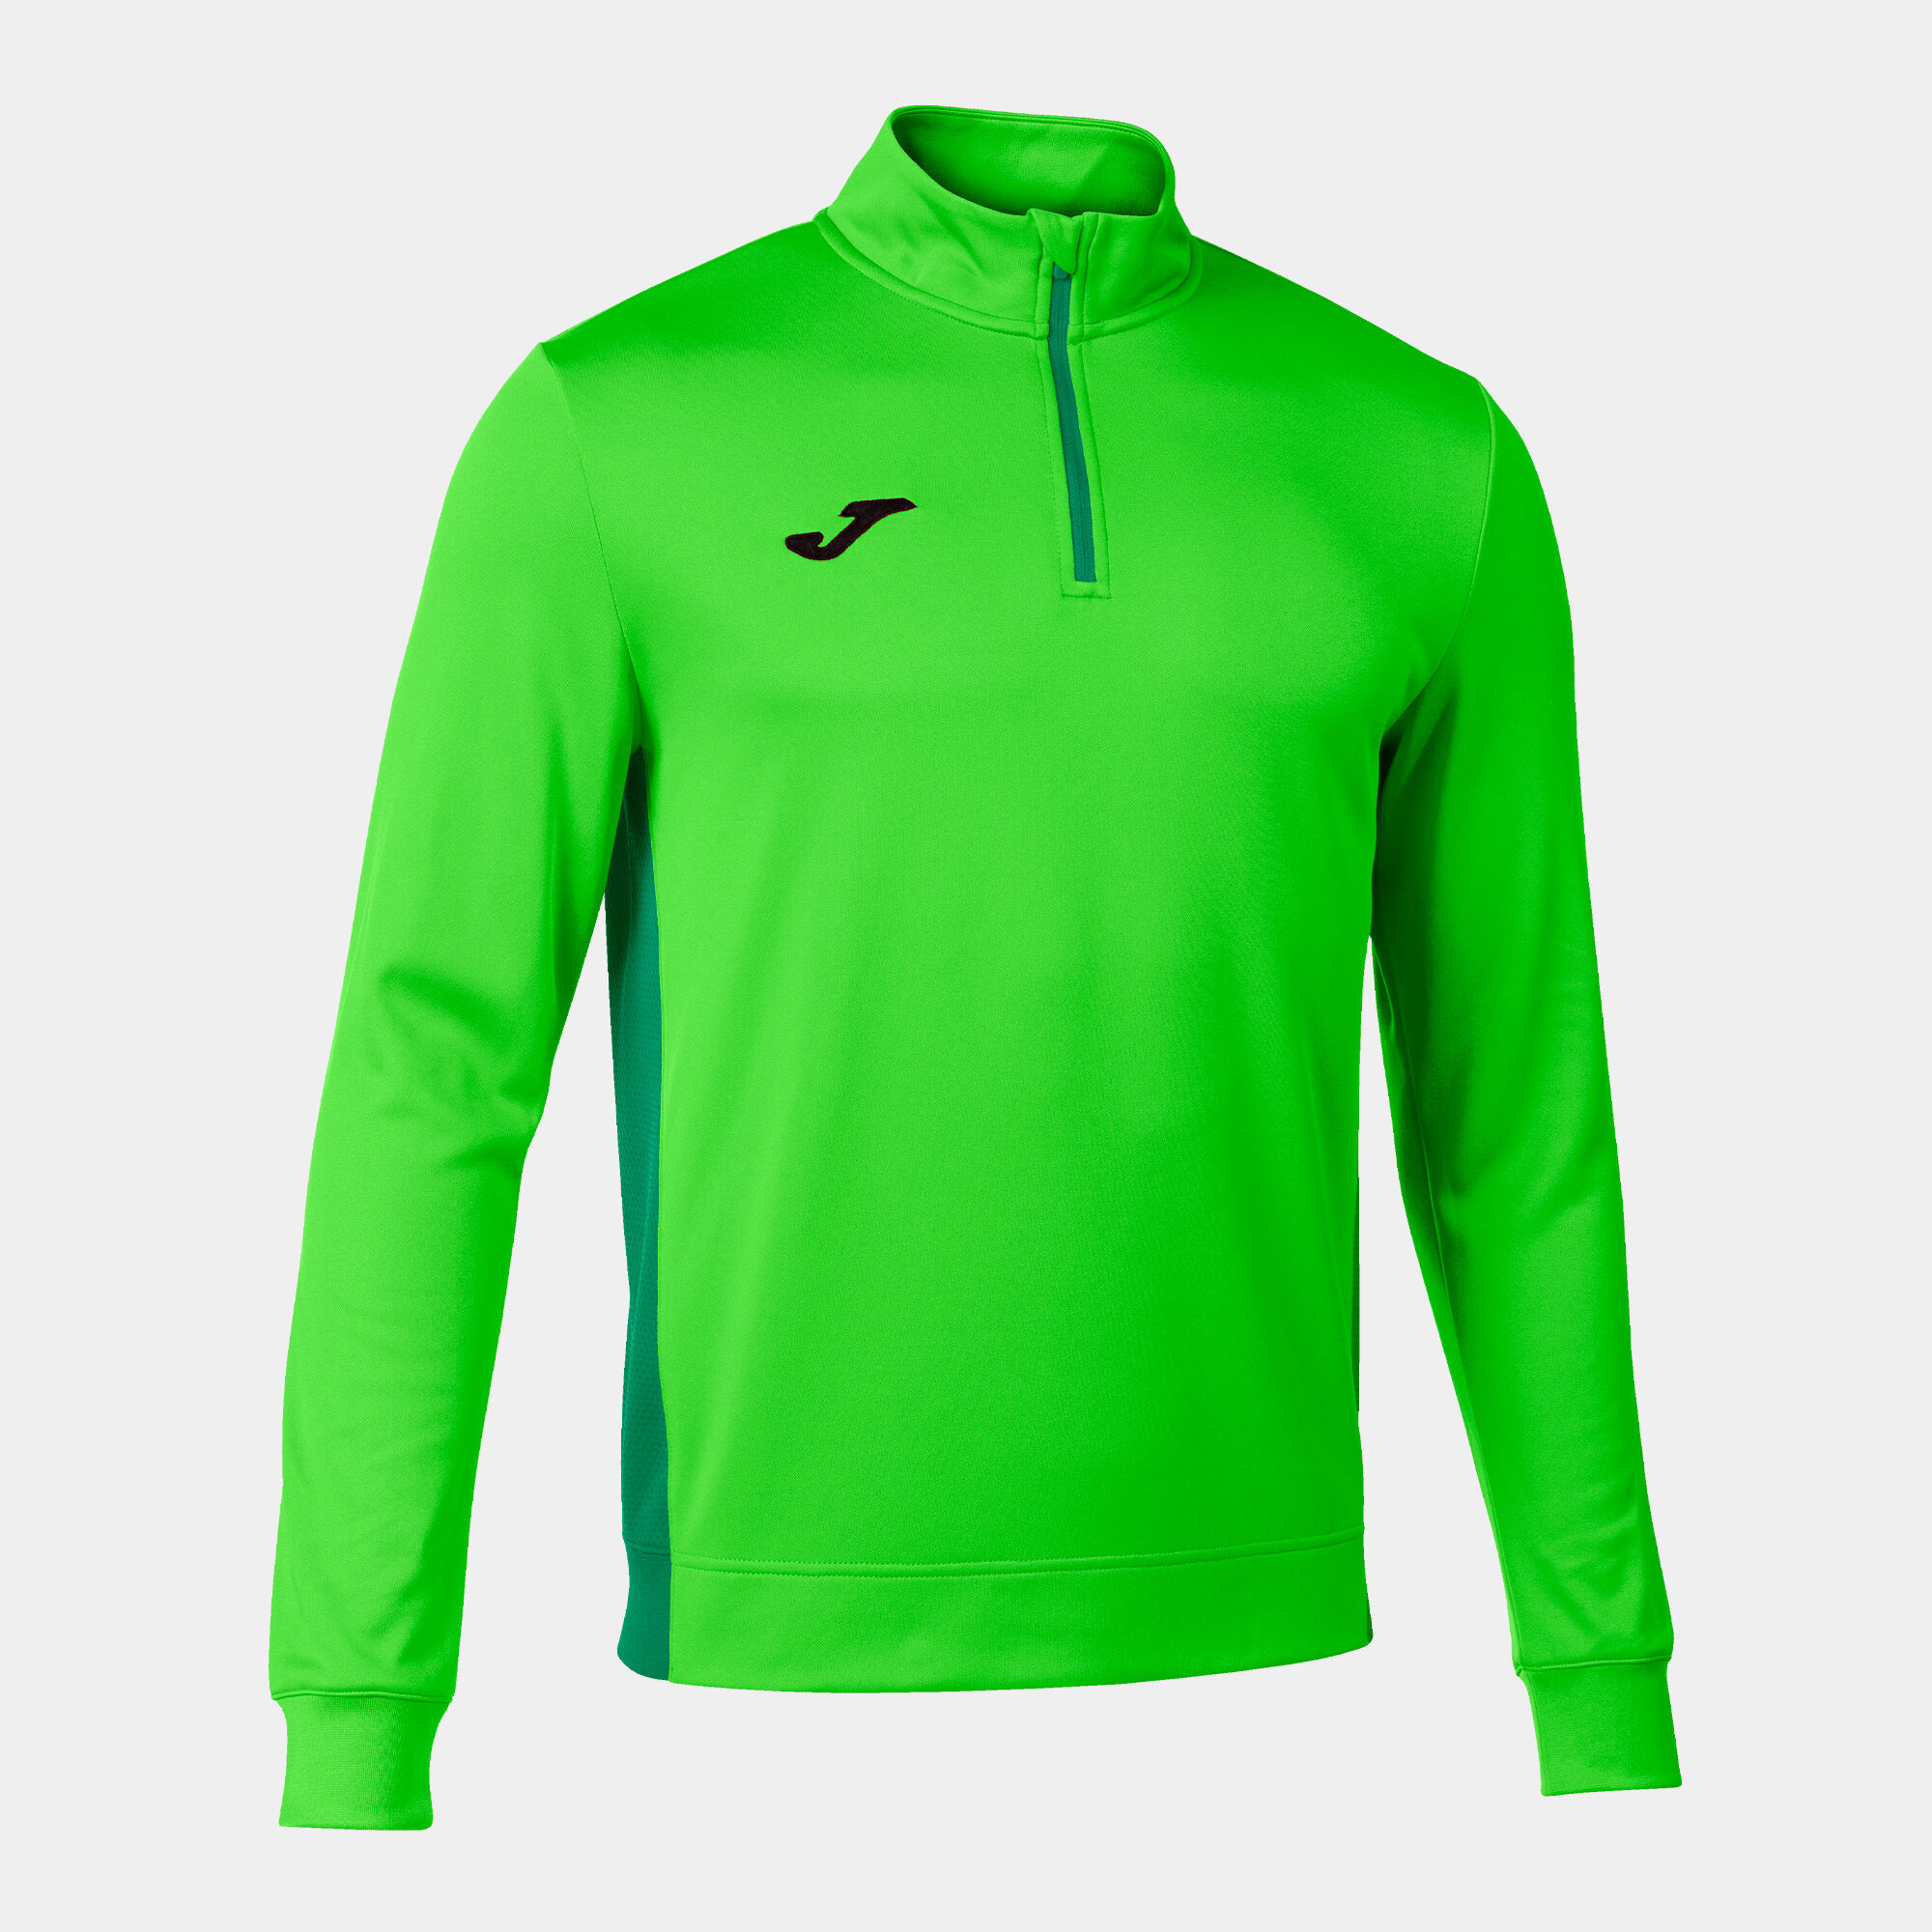 Sweat-shirt homme Winner II vert fluo